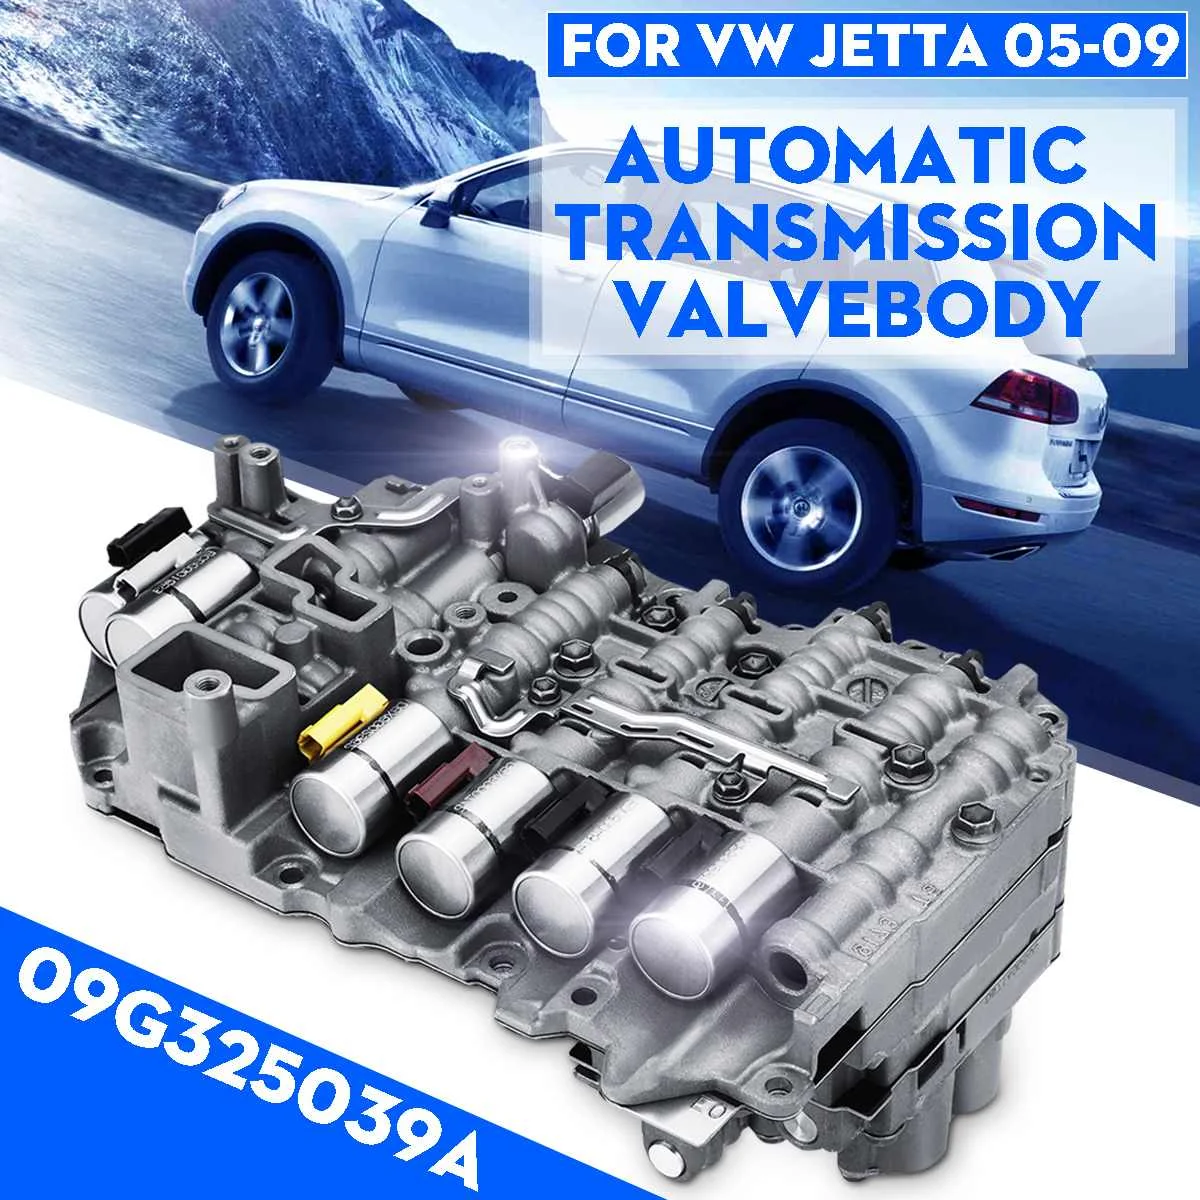 09 г автоматическая коробка передач Корпус клапана для VW/Jettaa/Beetlee/TT OEM#05-09 09G325039A запасные части авто аксессуары